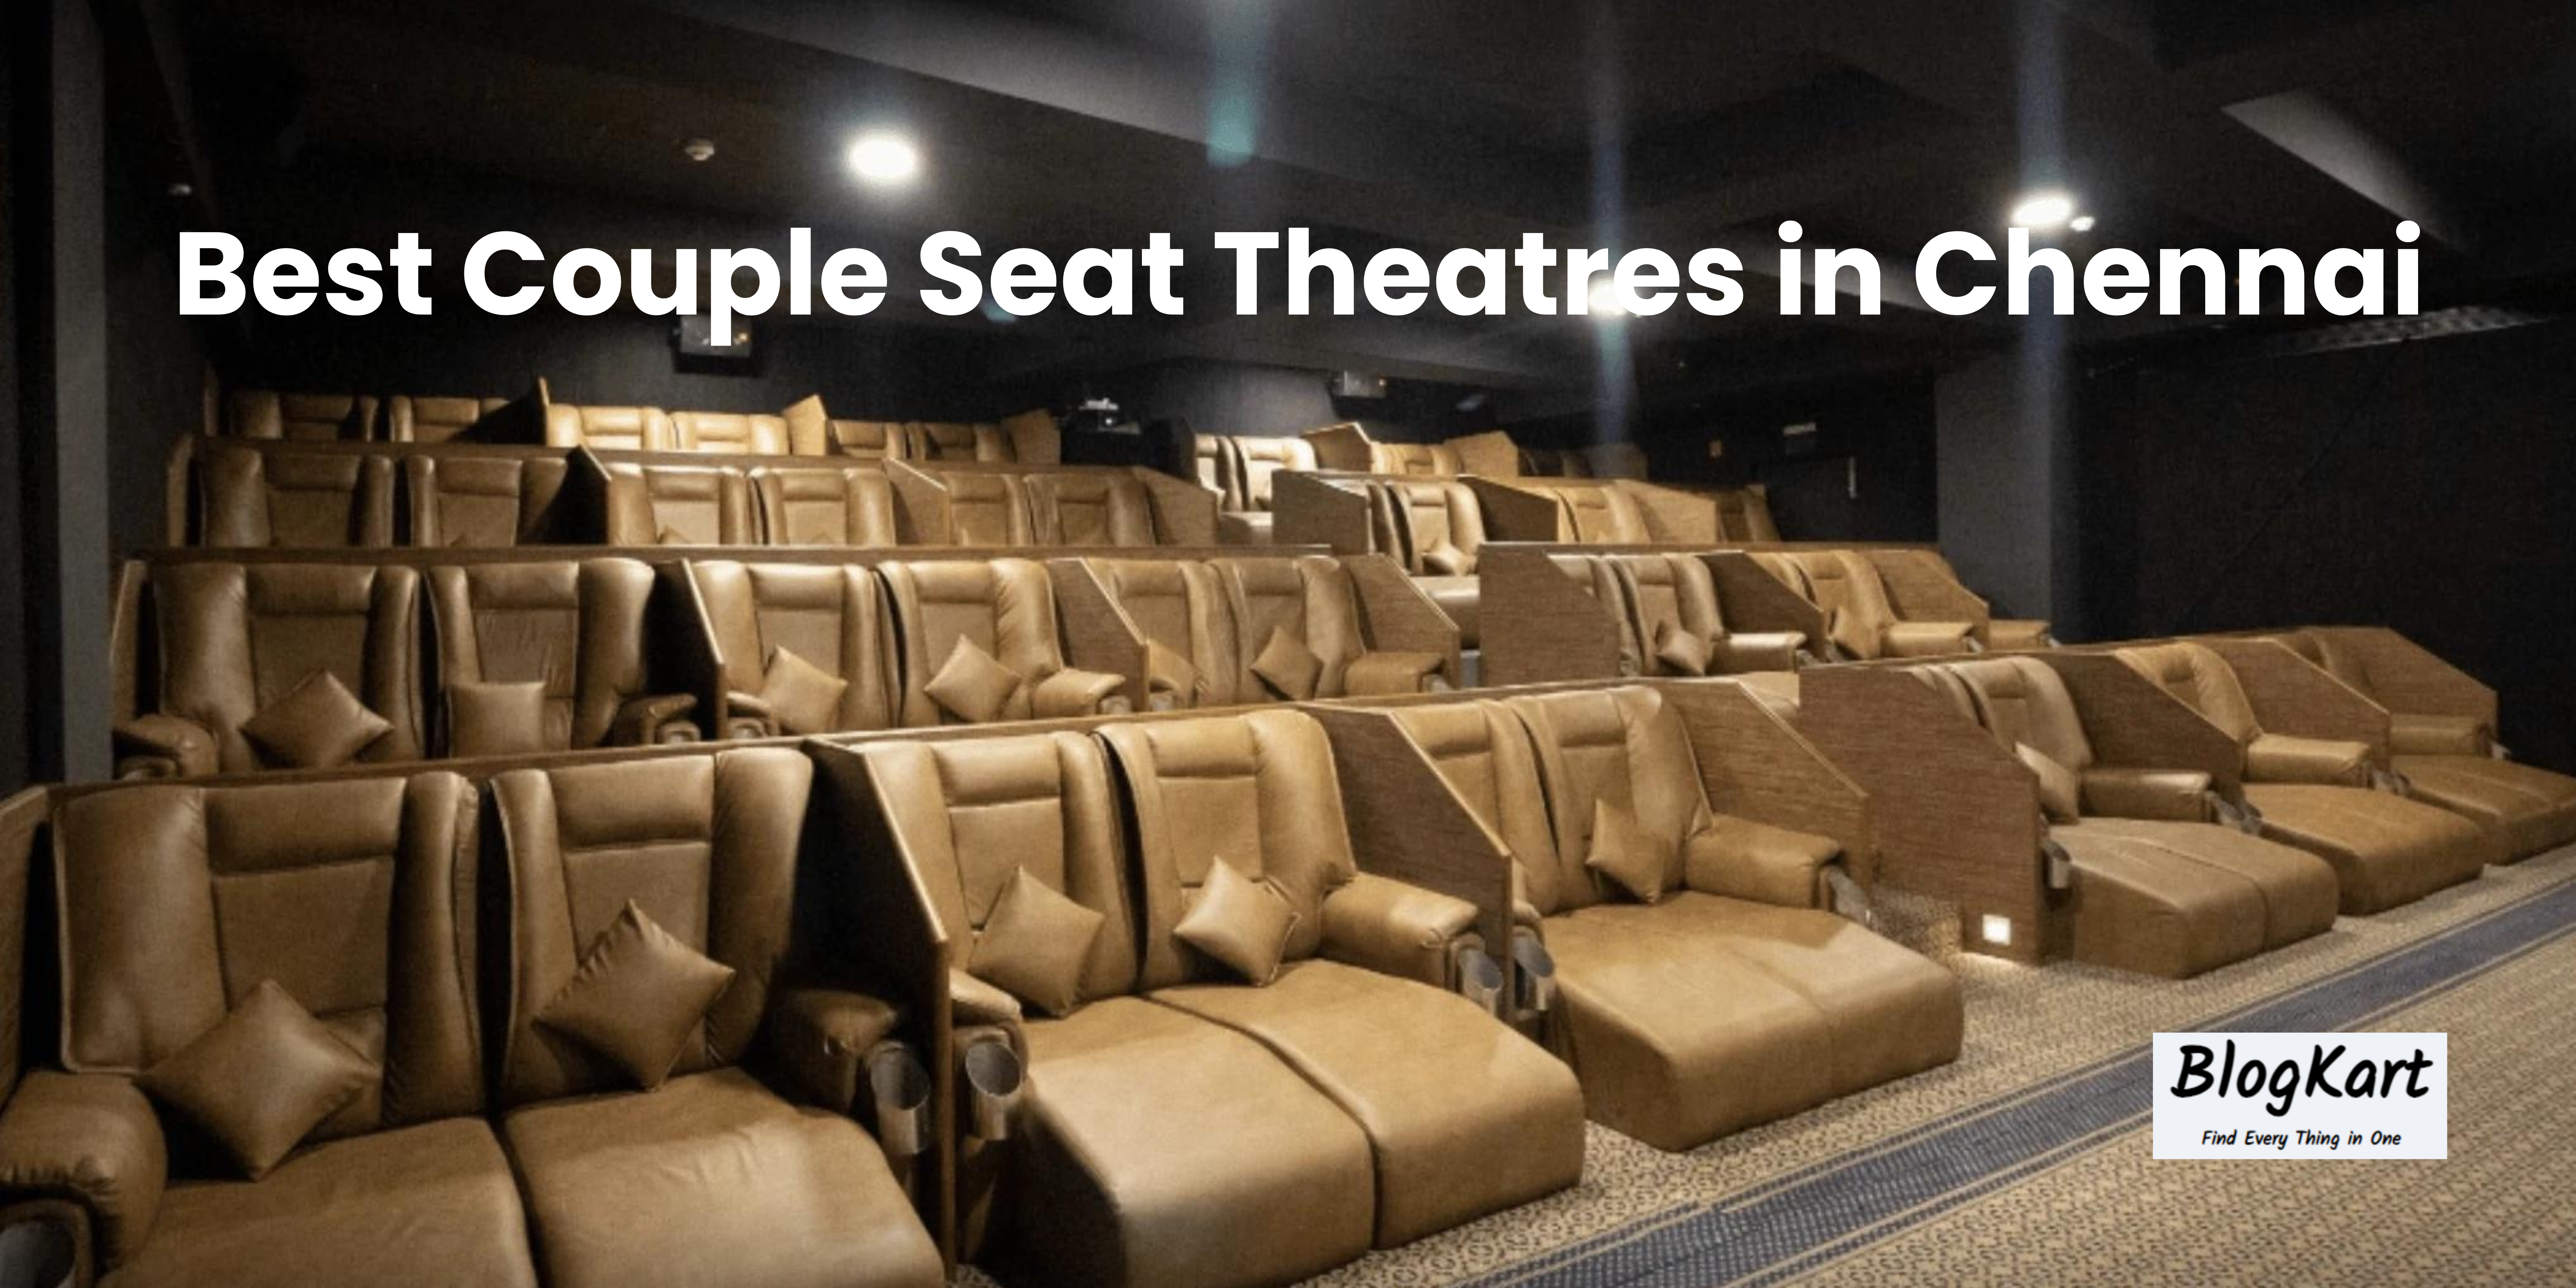 Couple Seat Theatres in Chennai